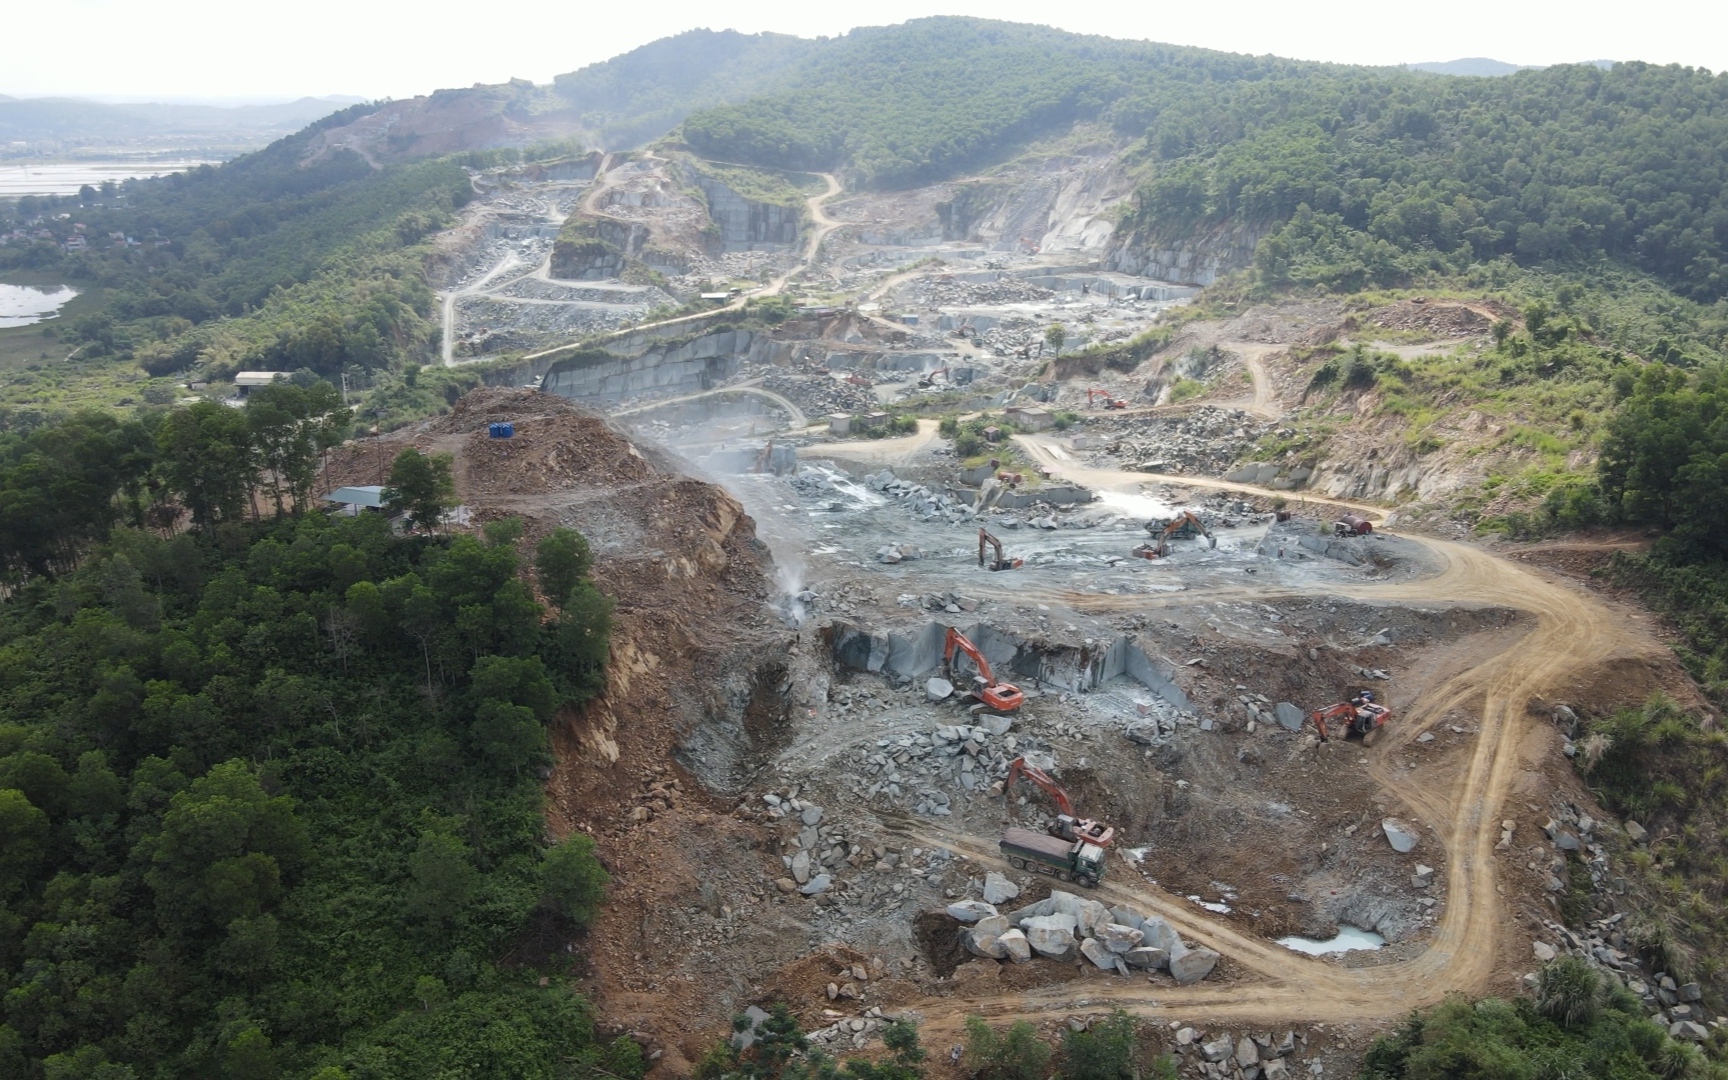 Huyện Hà Trung (Thanh Hóa): Nhiều mỏ đá có dấu hiệu sai phạm về kiểm soát khối lượng khai thác để trục lợi